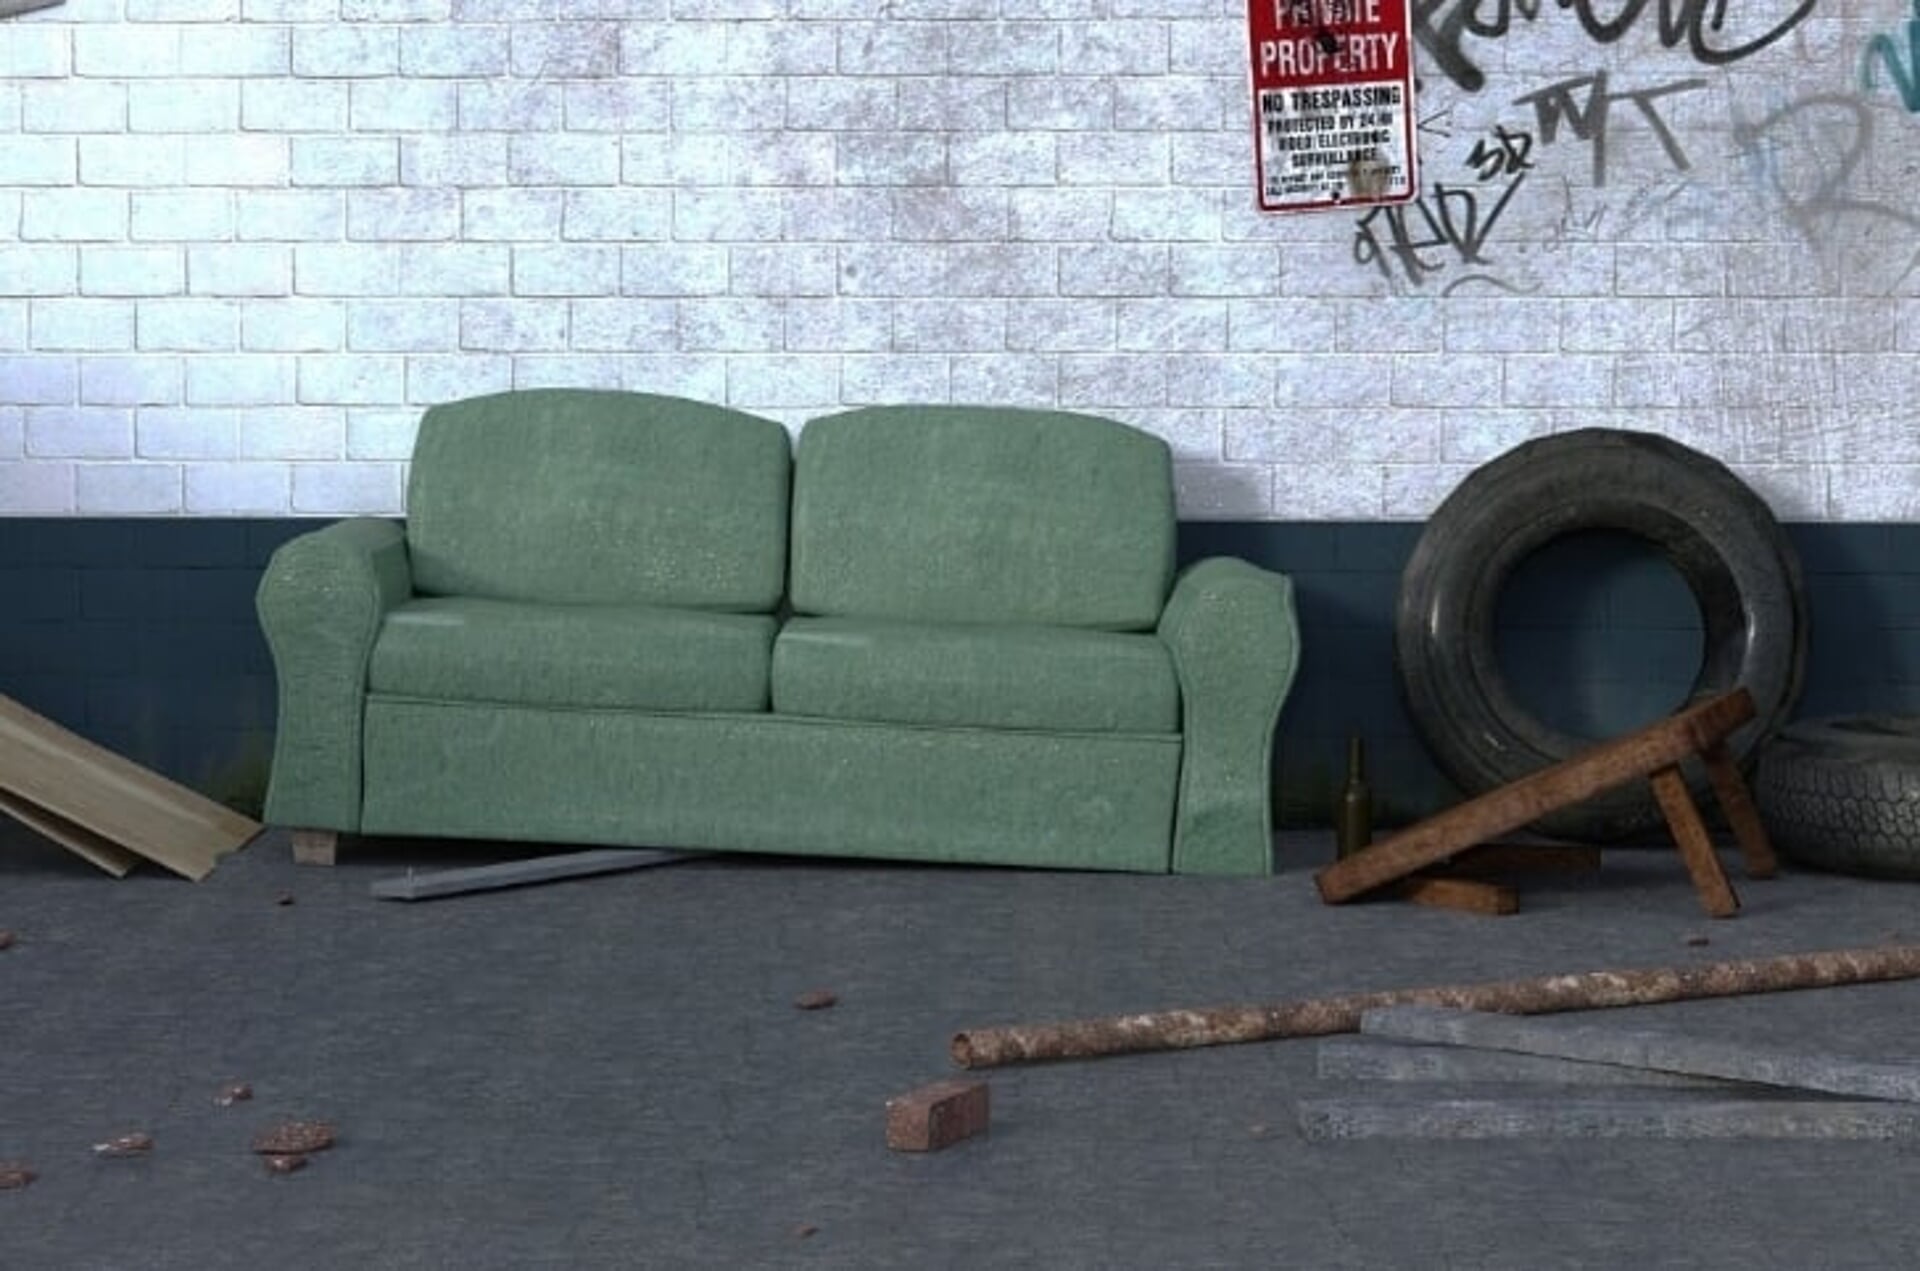 Oude meubels kunnen bij het grofvuil worden gezet.